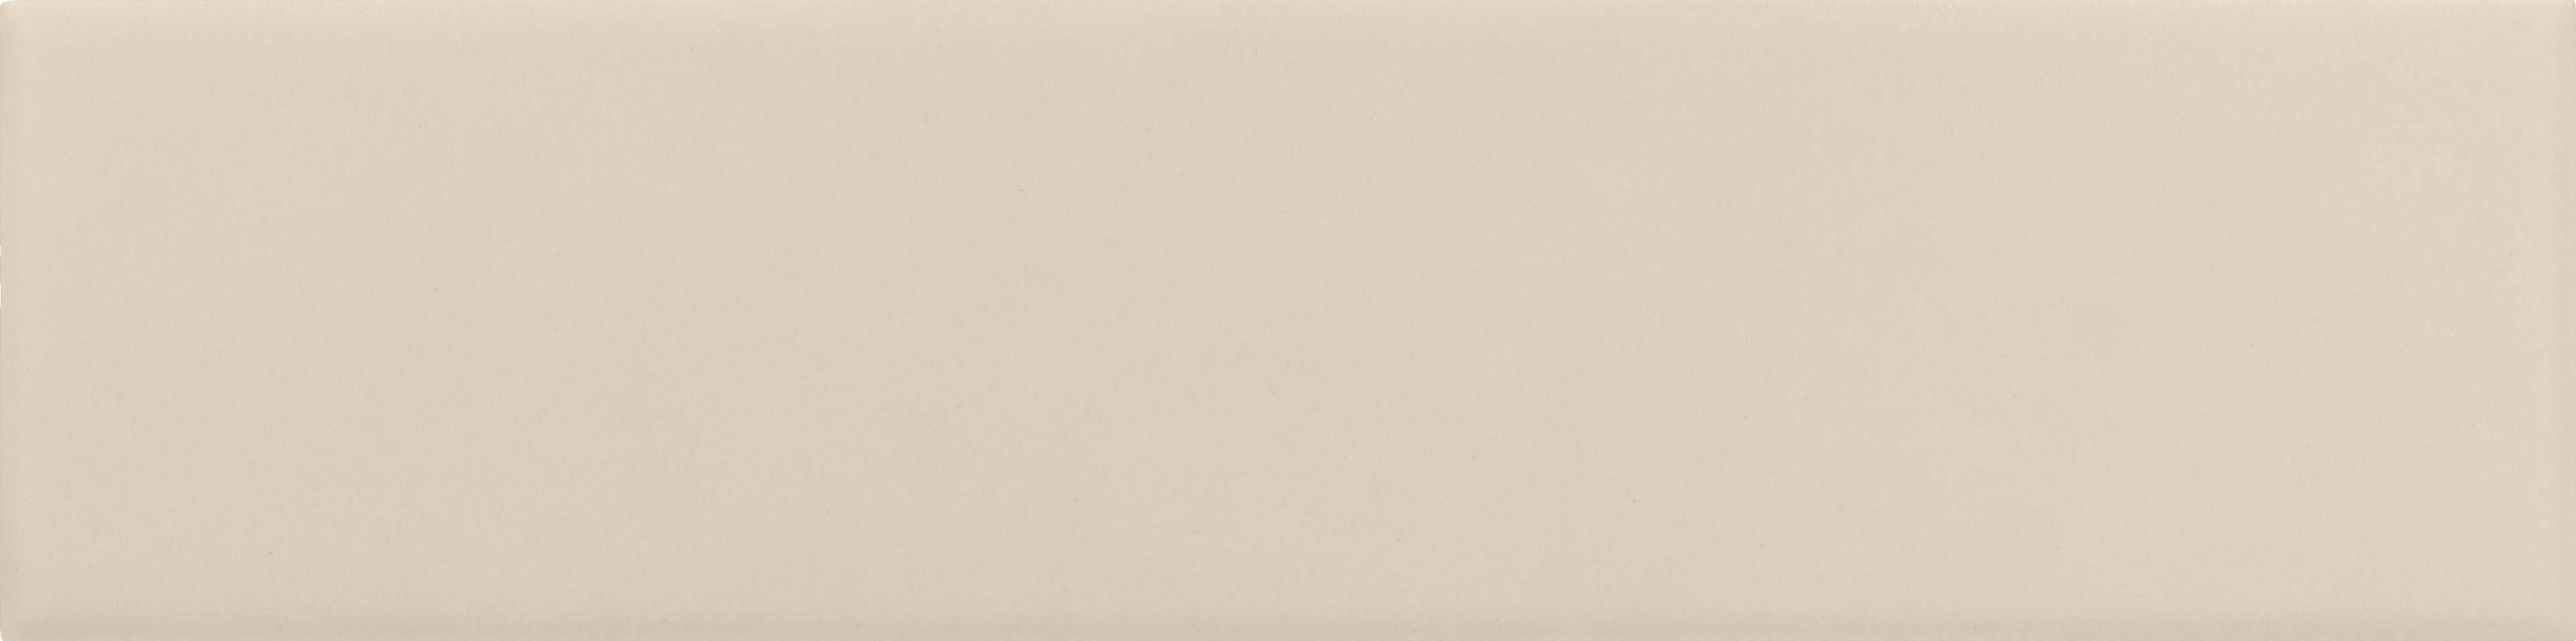 Faience pâte blanche effet vague CALO BEIGE PALE MATT - 5X20 - 0,5 m²